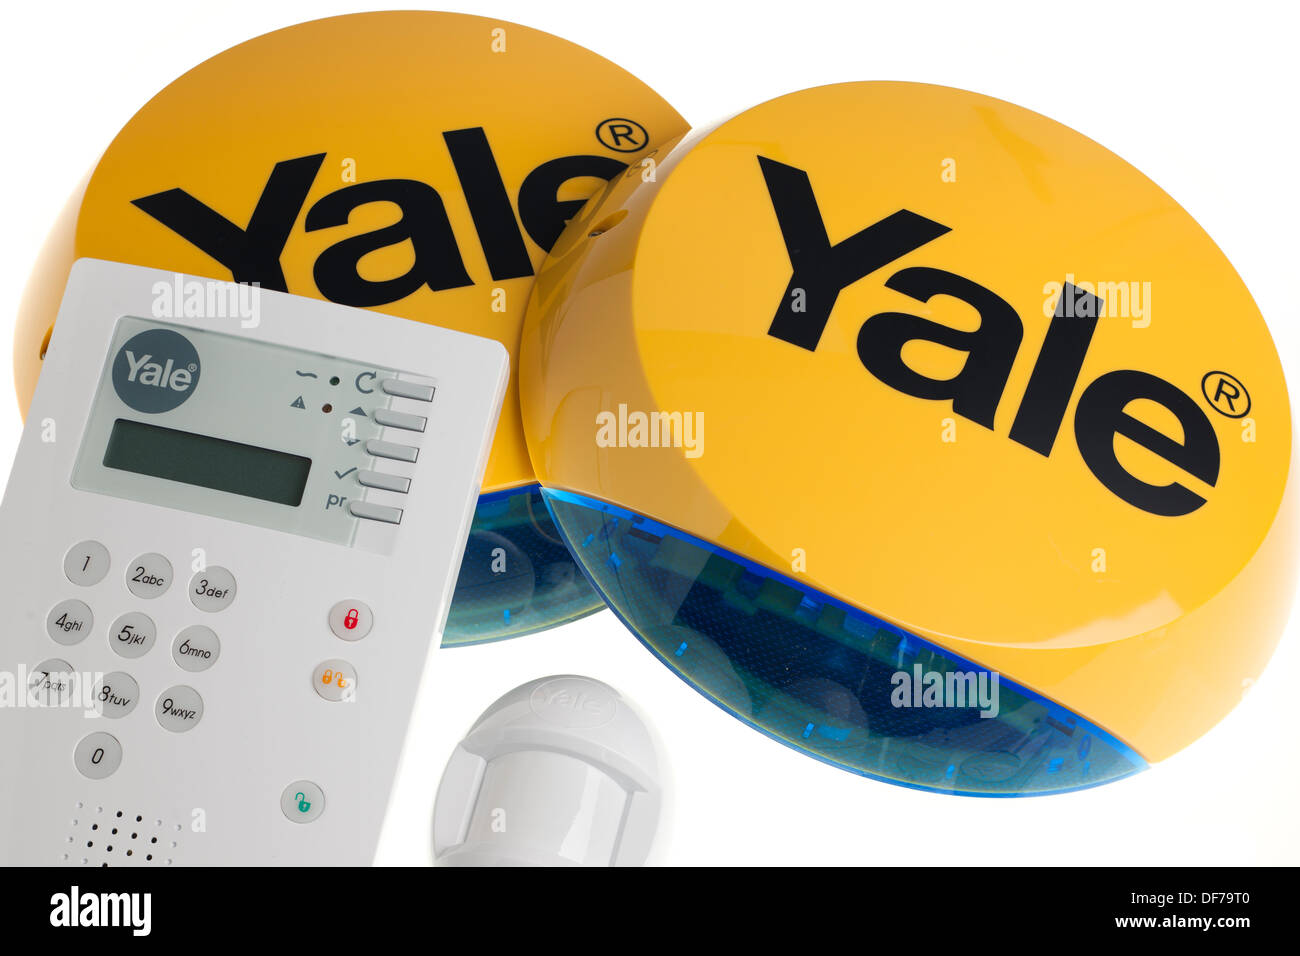 Yale wirefree wireless premium alarm Stock Photo